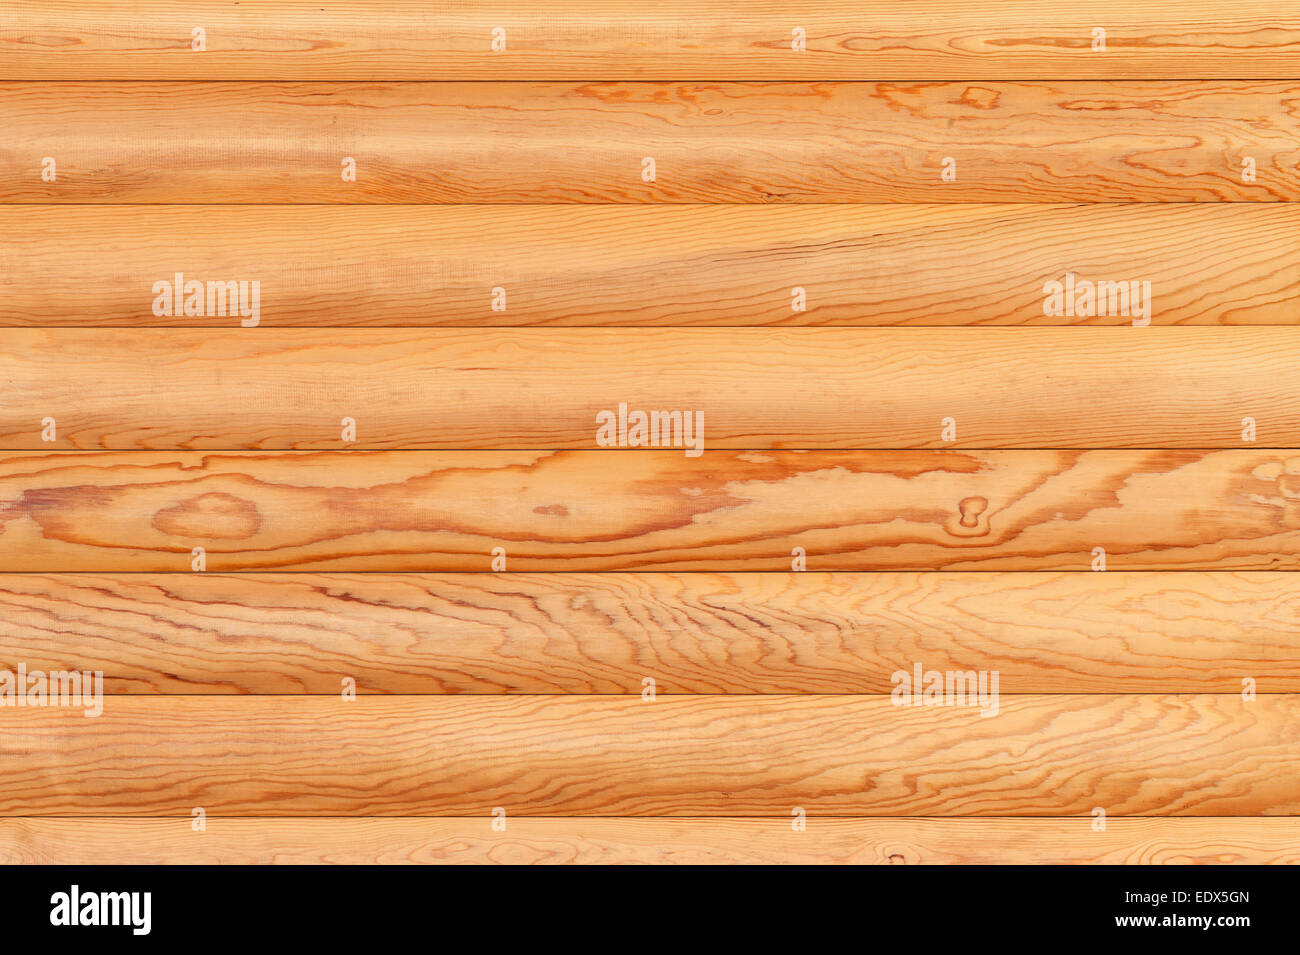 Journal de fond naturel de mur. La texture du sol en bois de sciage. Banque D'Images